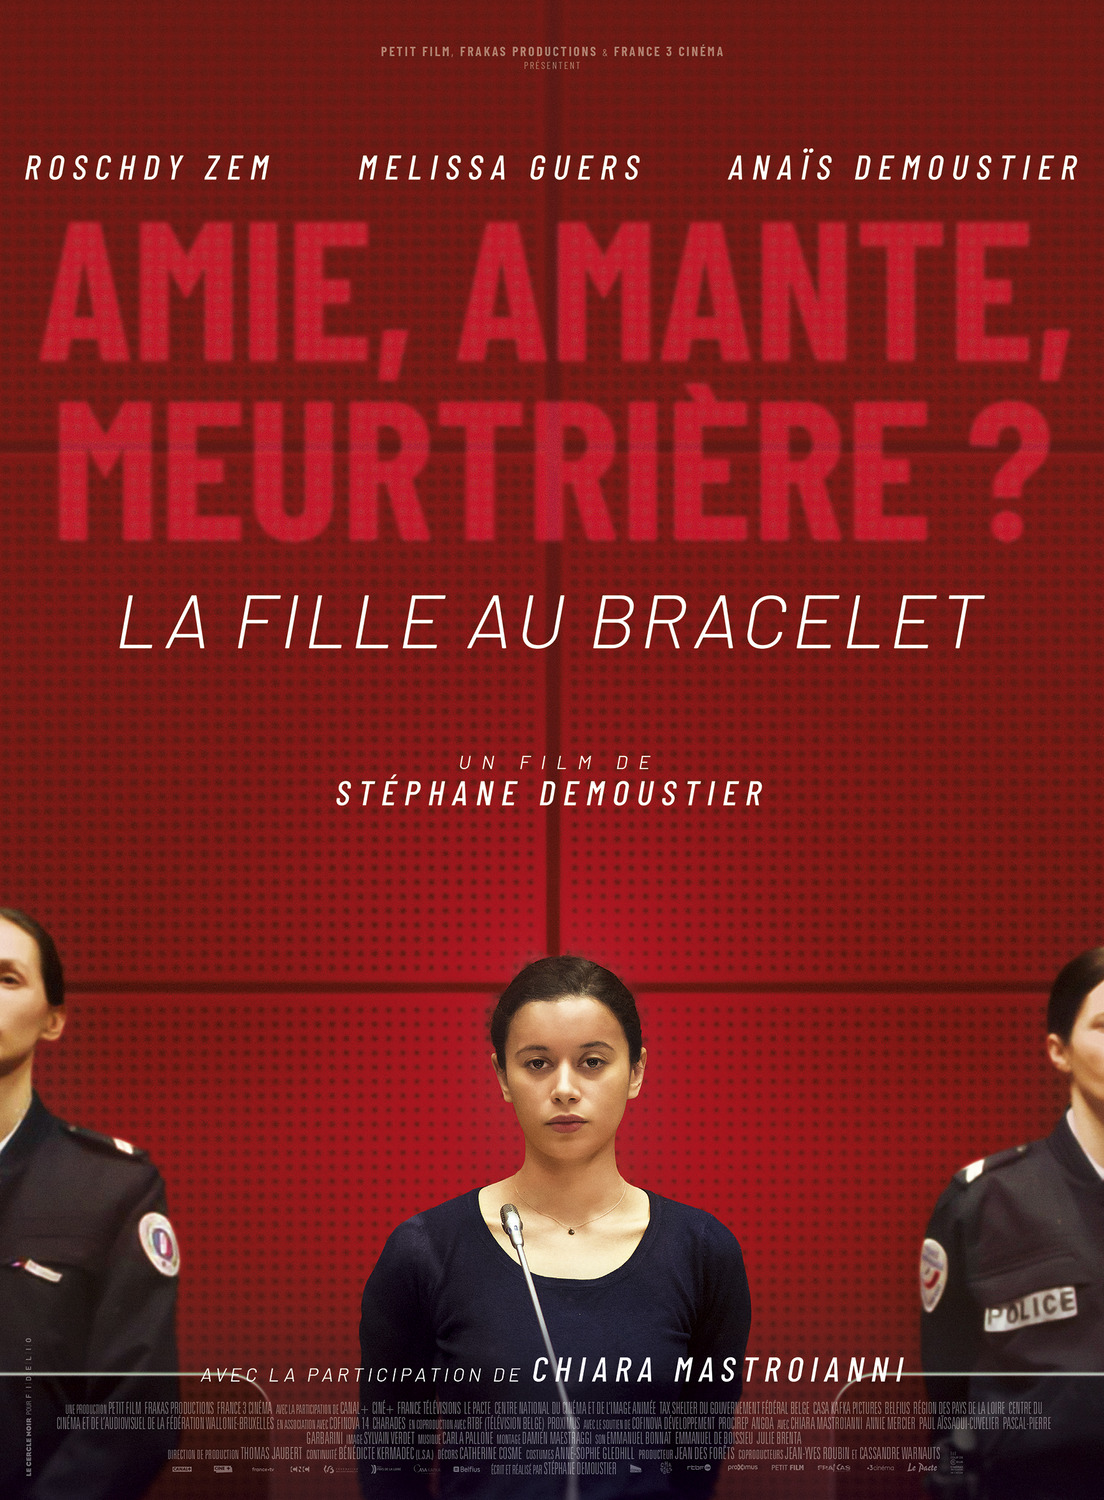 Extra Large Movie Poster Image for La fille au bracelet 